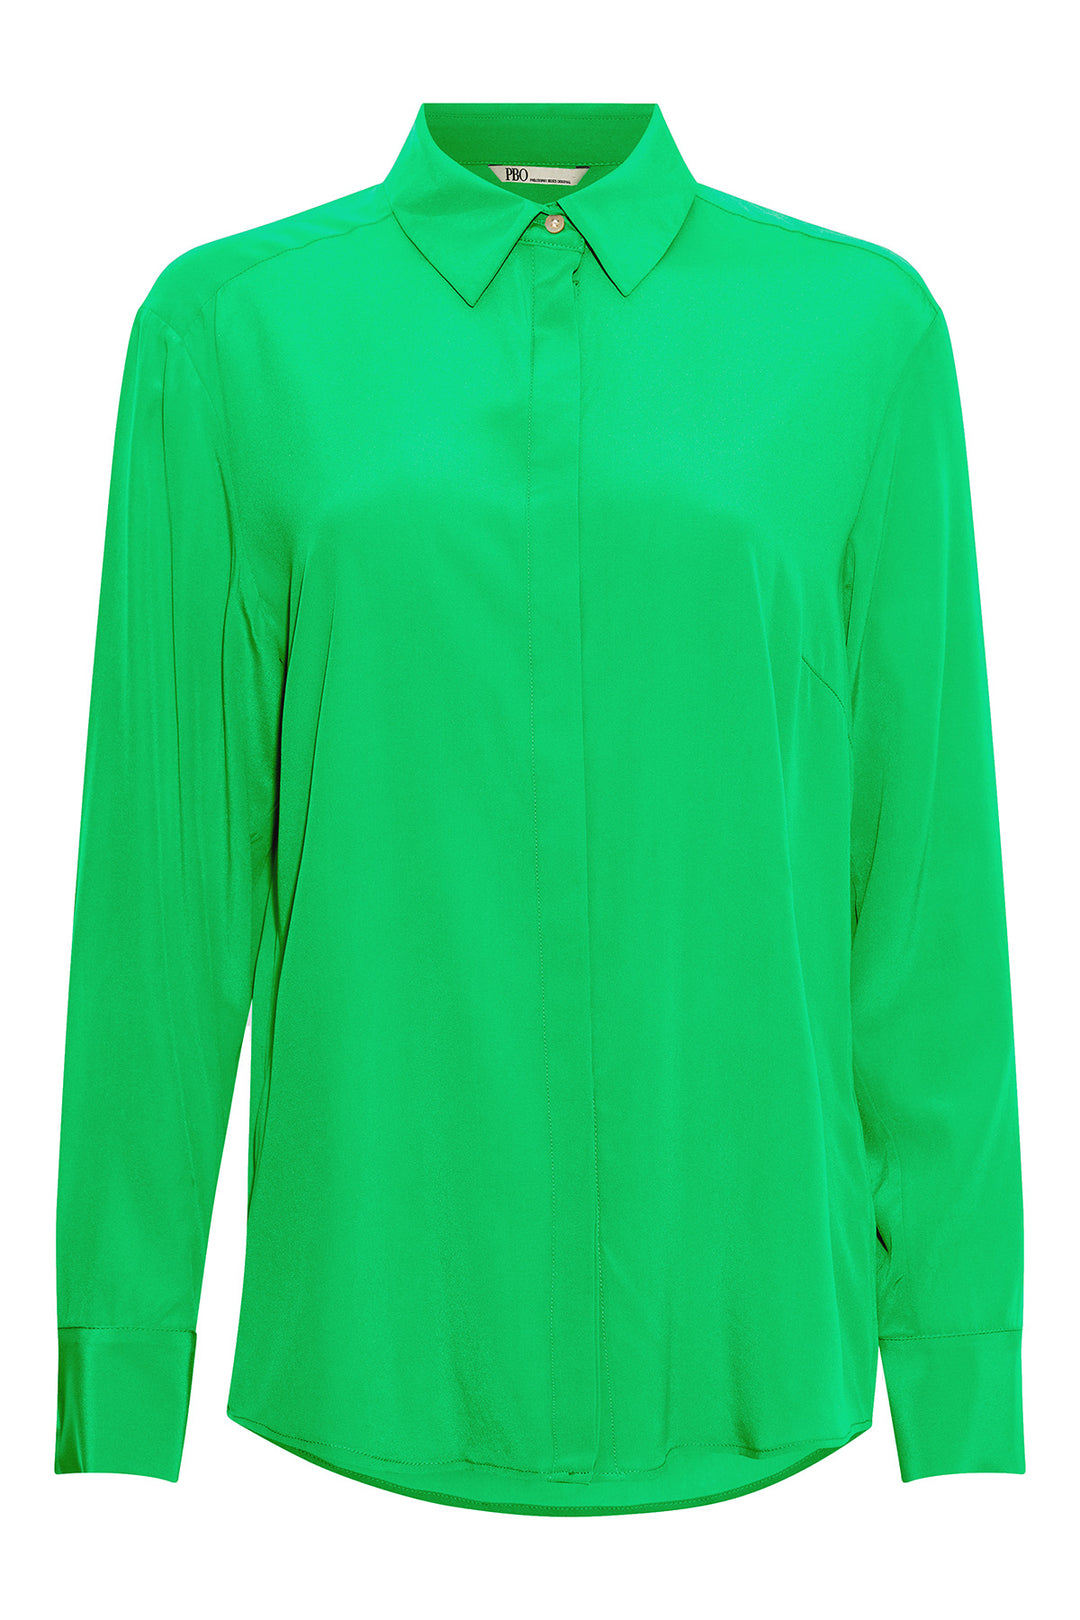 PBO Merinda skjorte SHIRTS 597 Kelly green